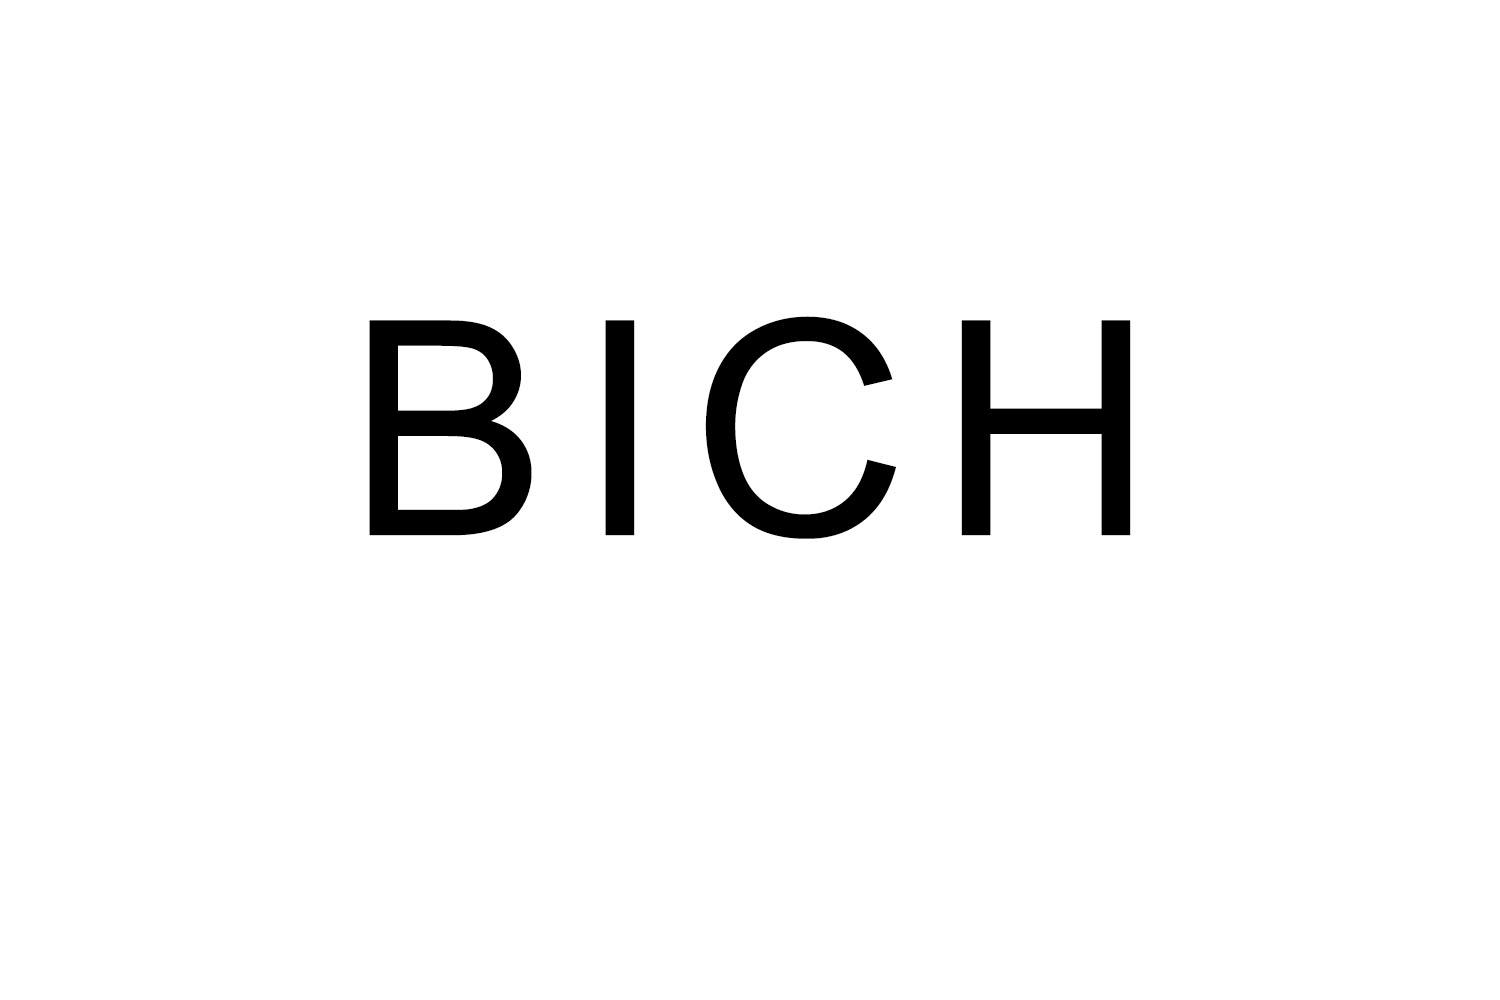 BICH